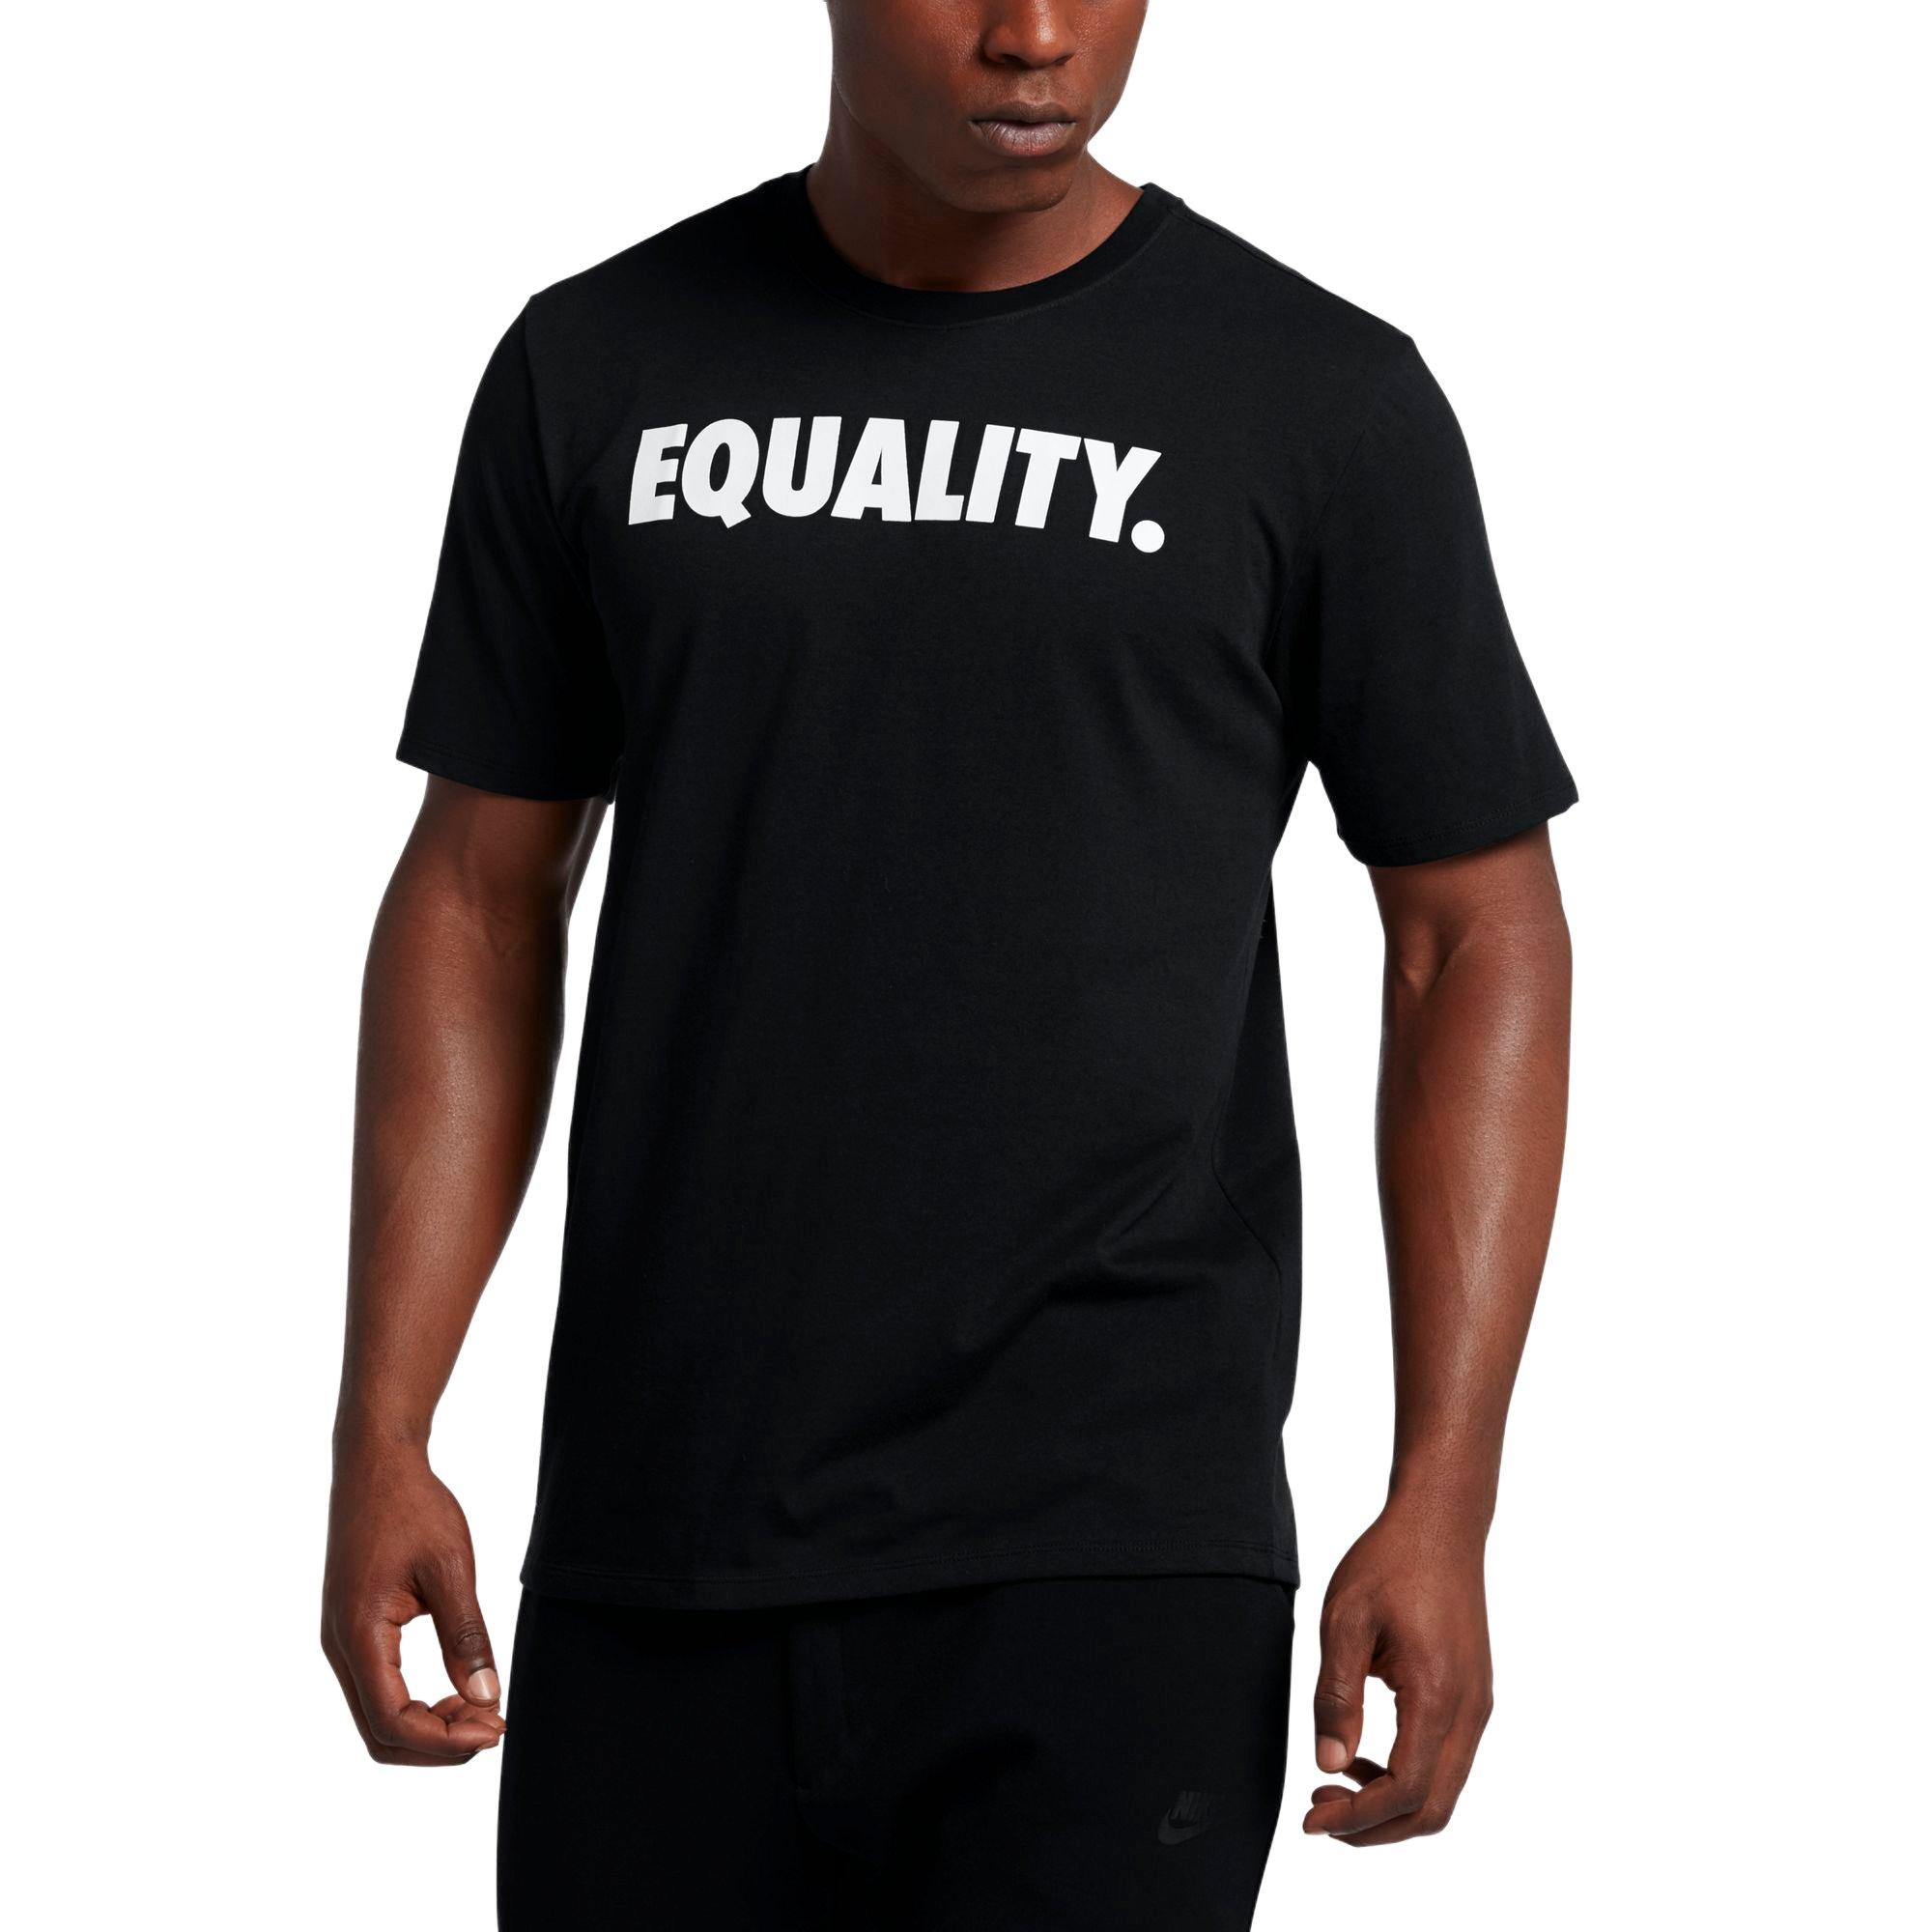 lebron james equality shirt